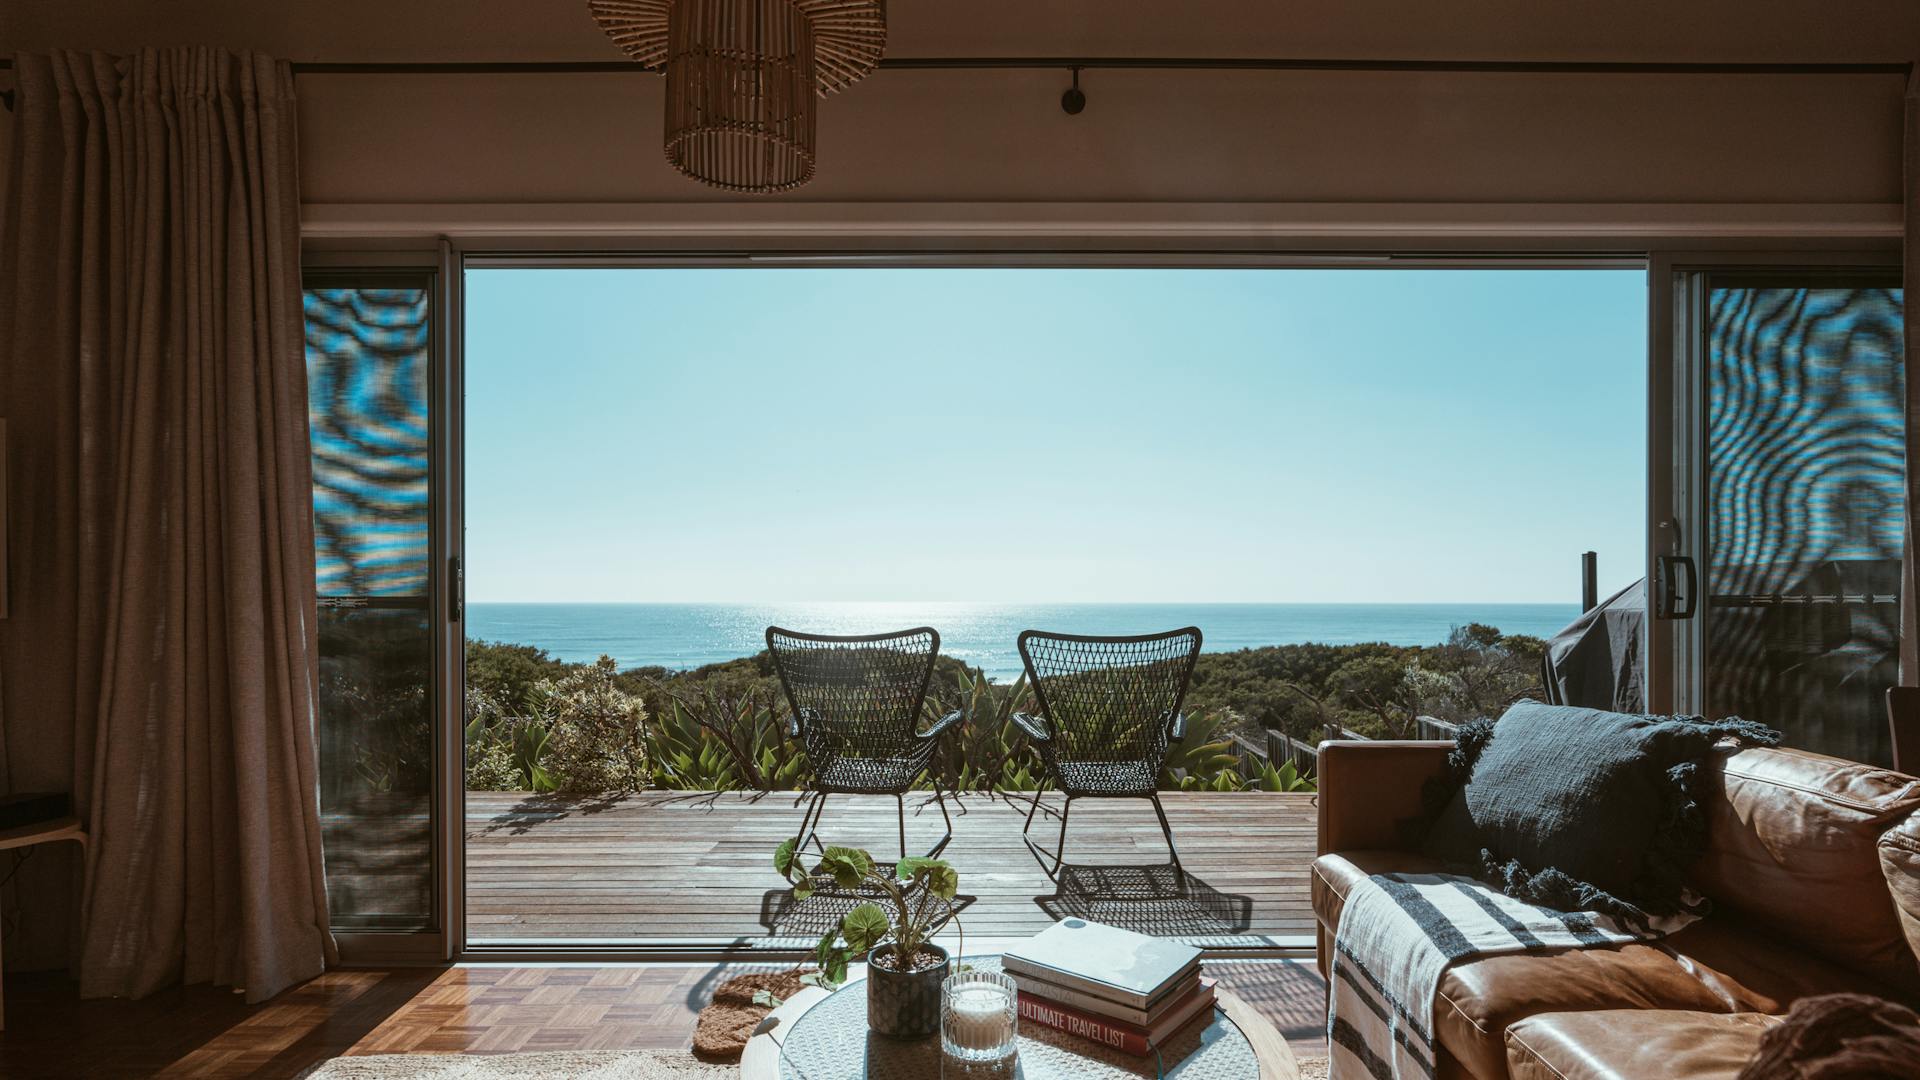 Terrace of modern villa overlooking ocean